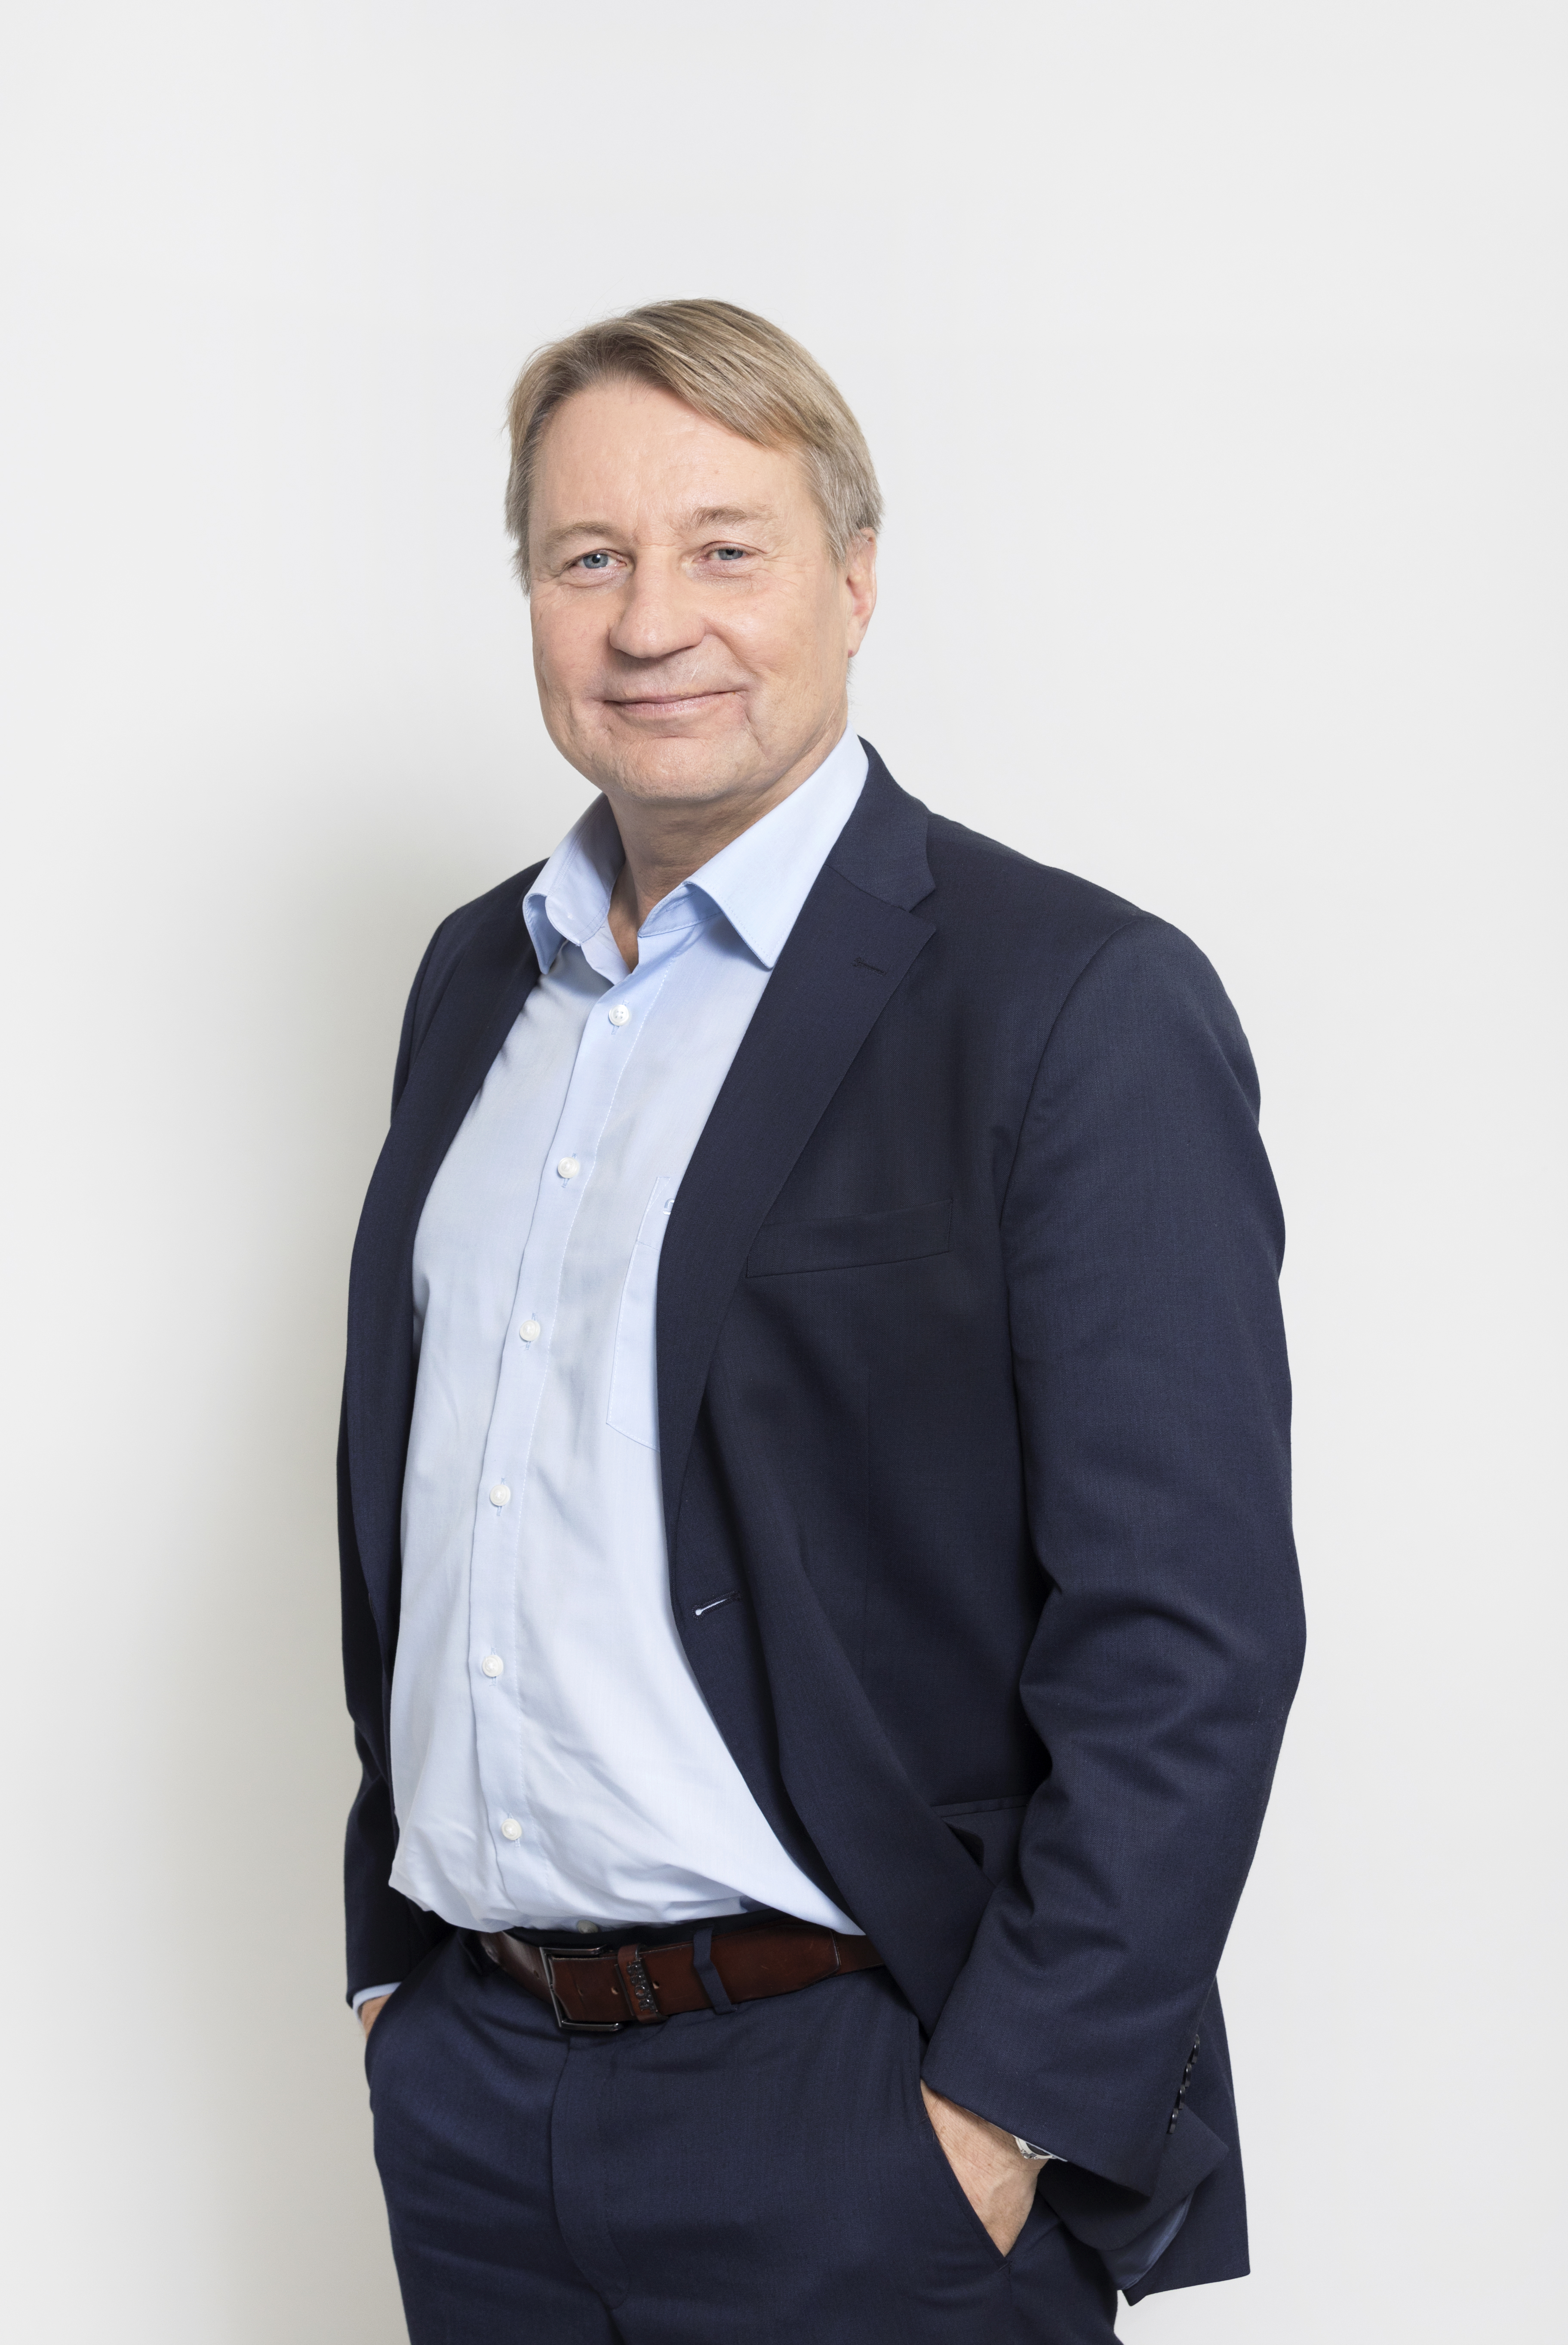 Tuomas Tenkanen Mobidiag CEO